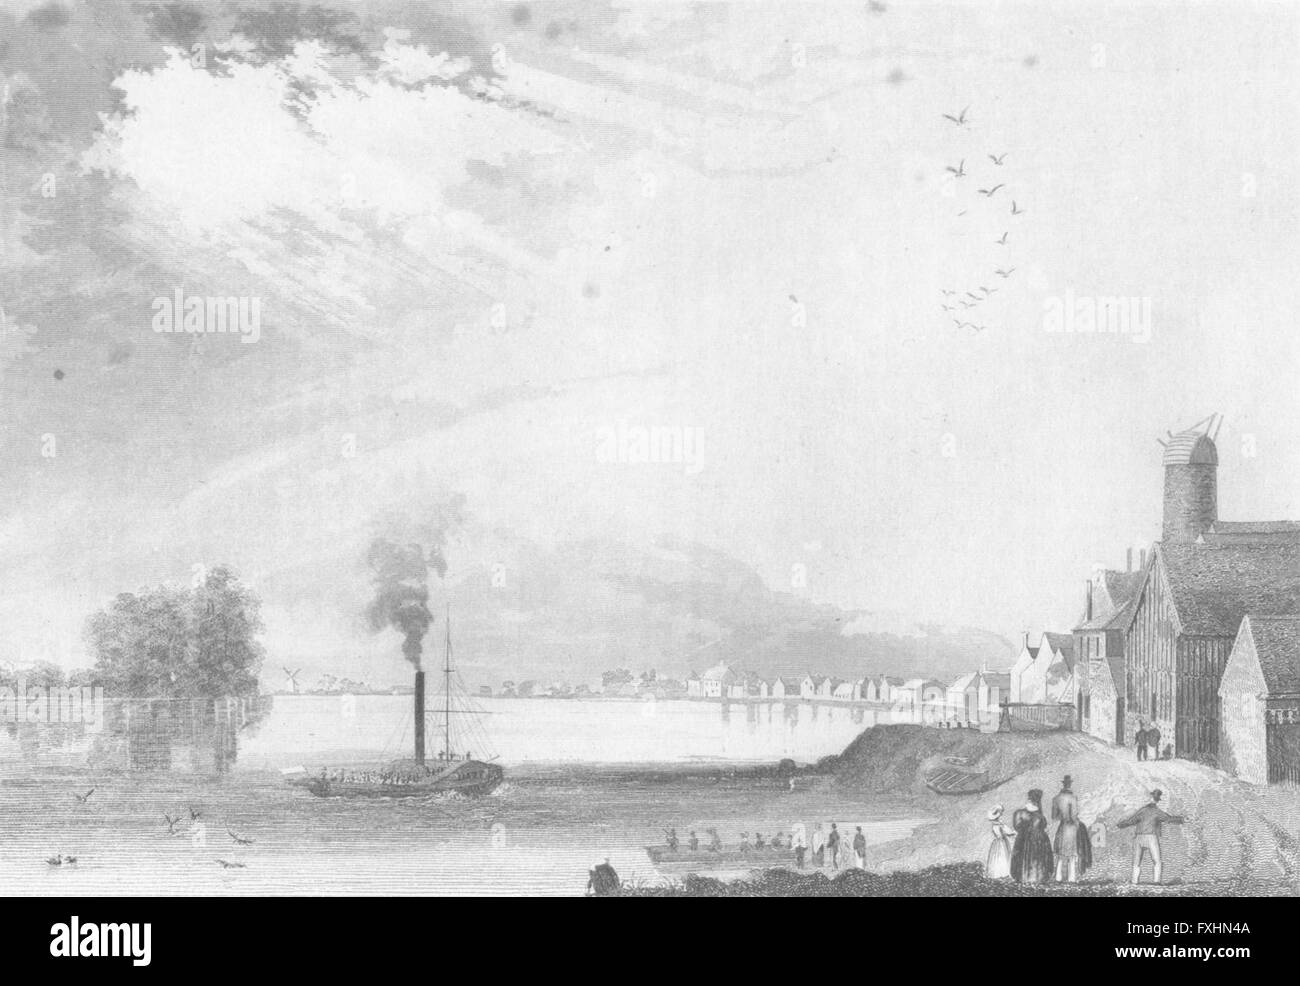 LINCS: Ferry, Trent: Saunders, un antiguo barco de vapor imprimir 1836 Foto de stock